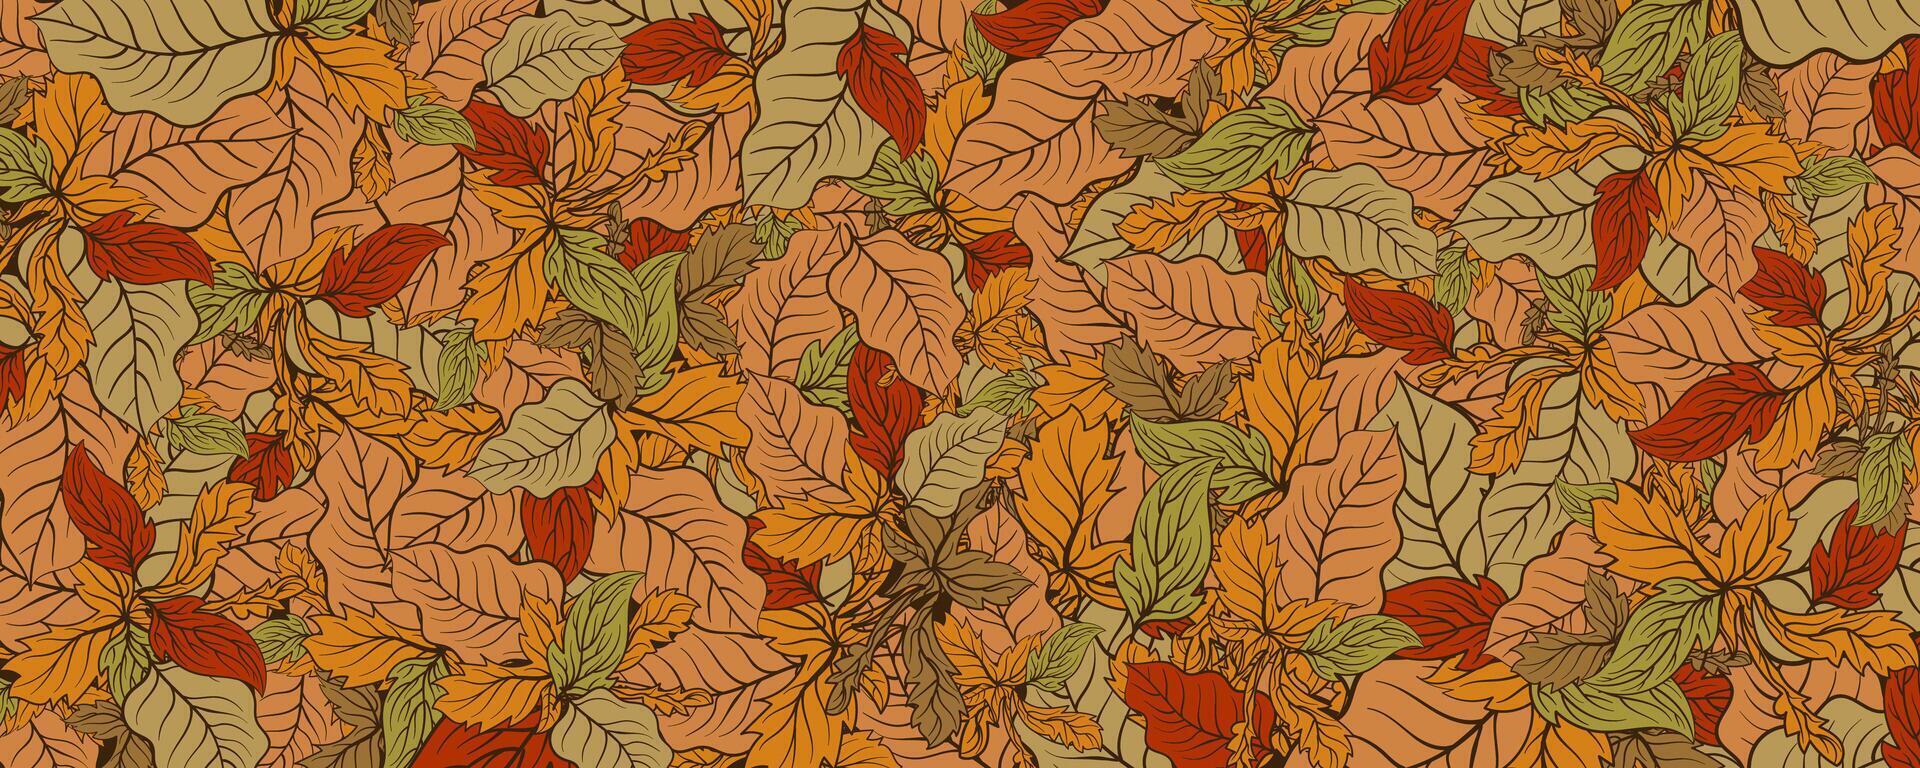 herfst blad patroon achtergrond.vector illustratie vector